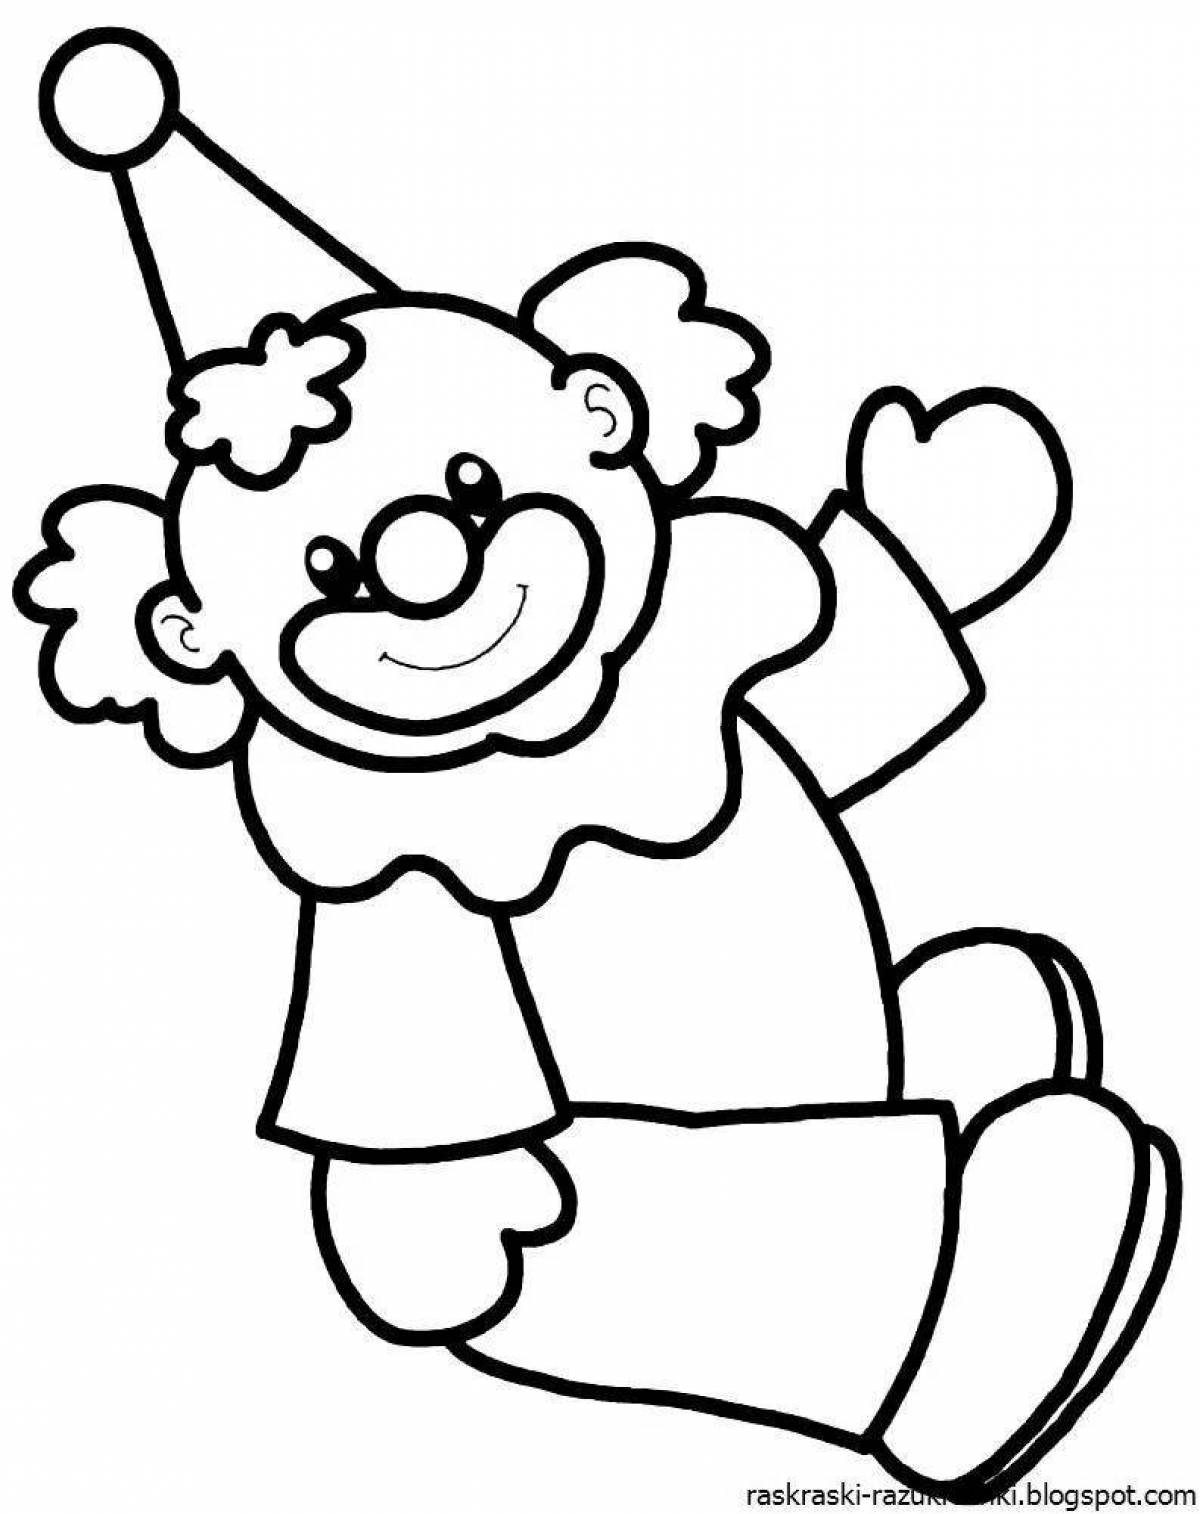 Раскраска клоун для детей 3 4 лет. Клоун раскраска. Клоун для раскрашивания детям. Клоун раскраска для детей. Клоун картинка для детей раскраска.